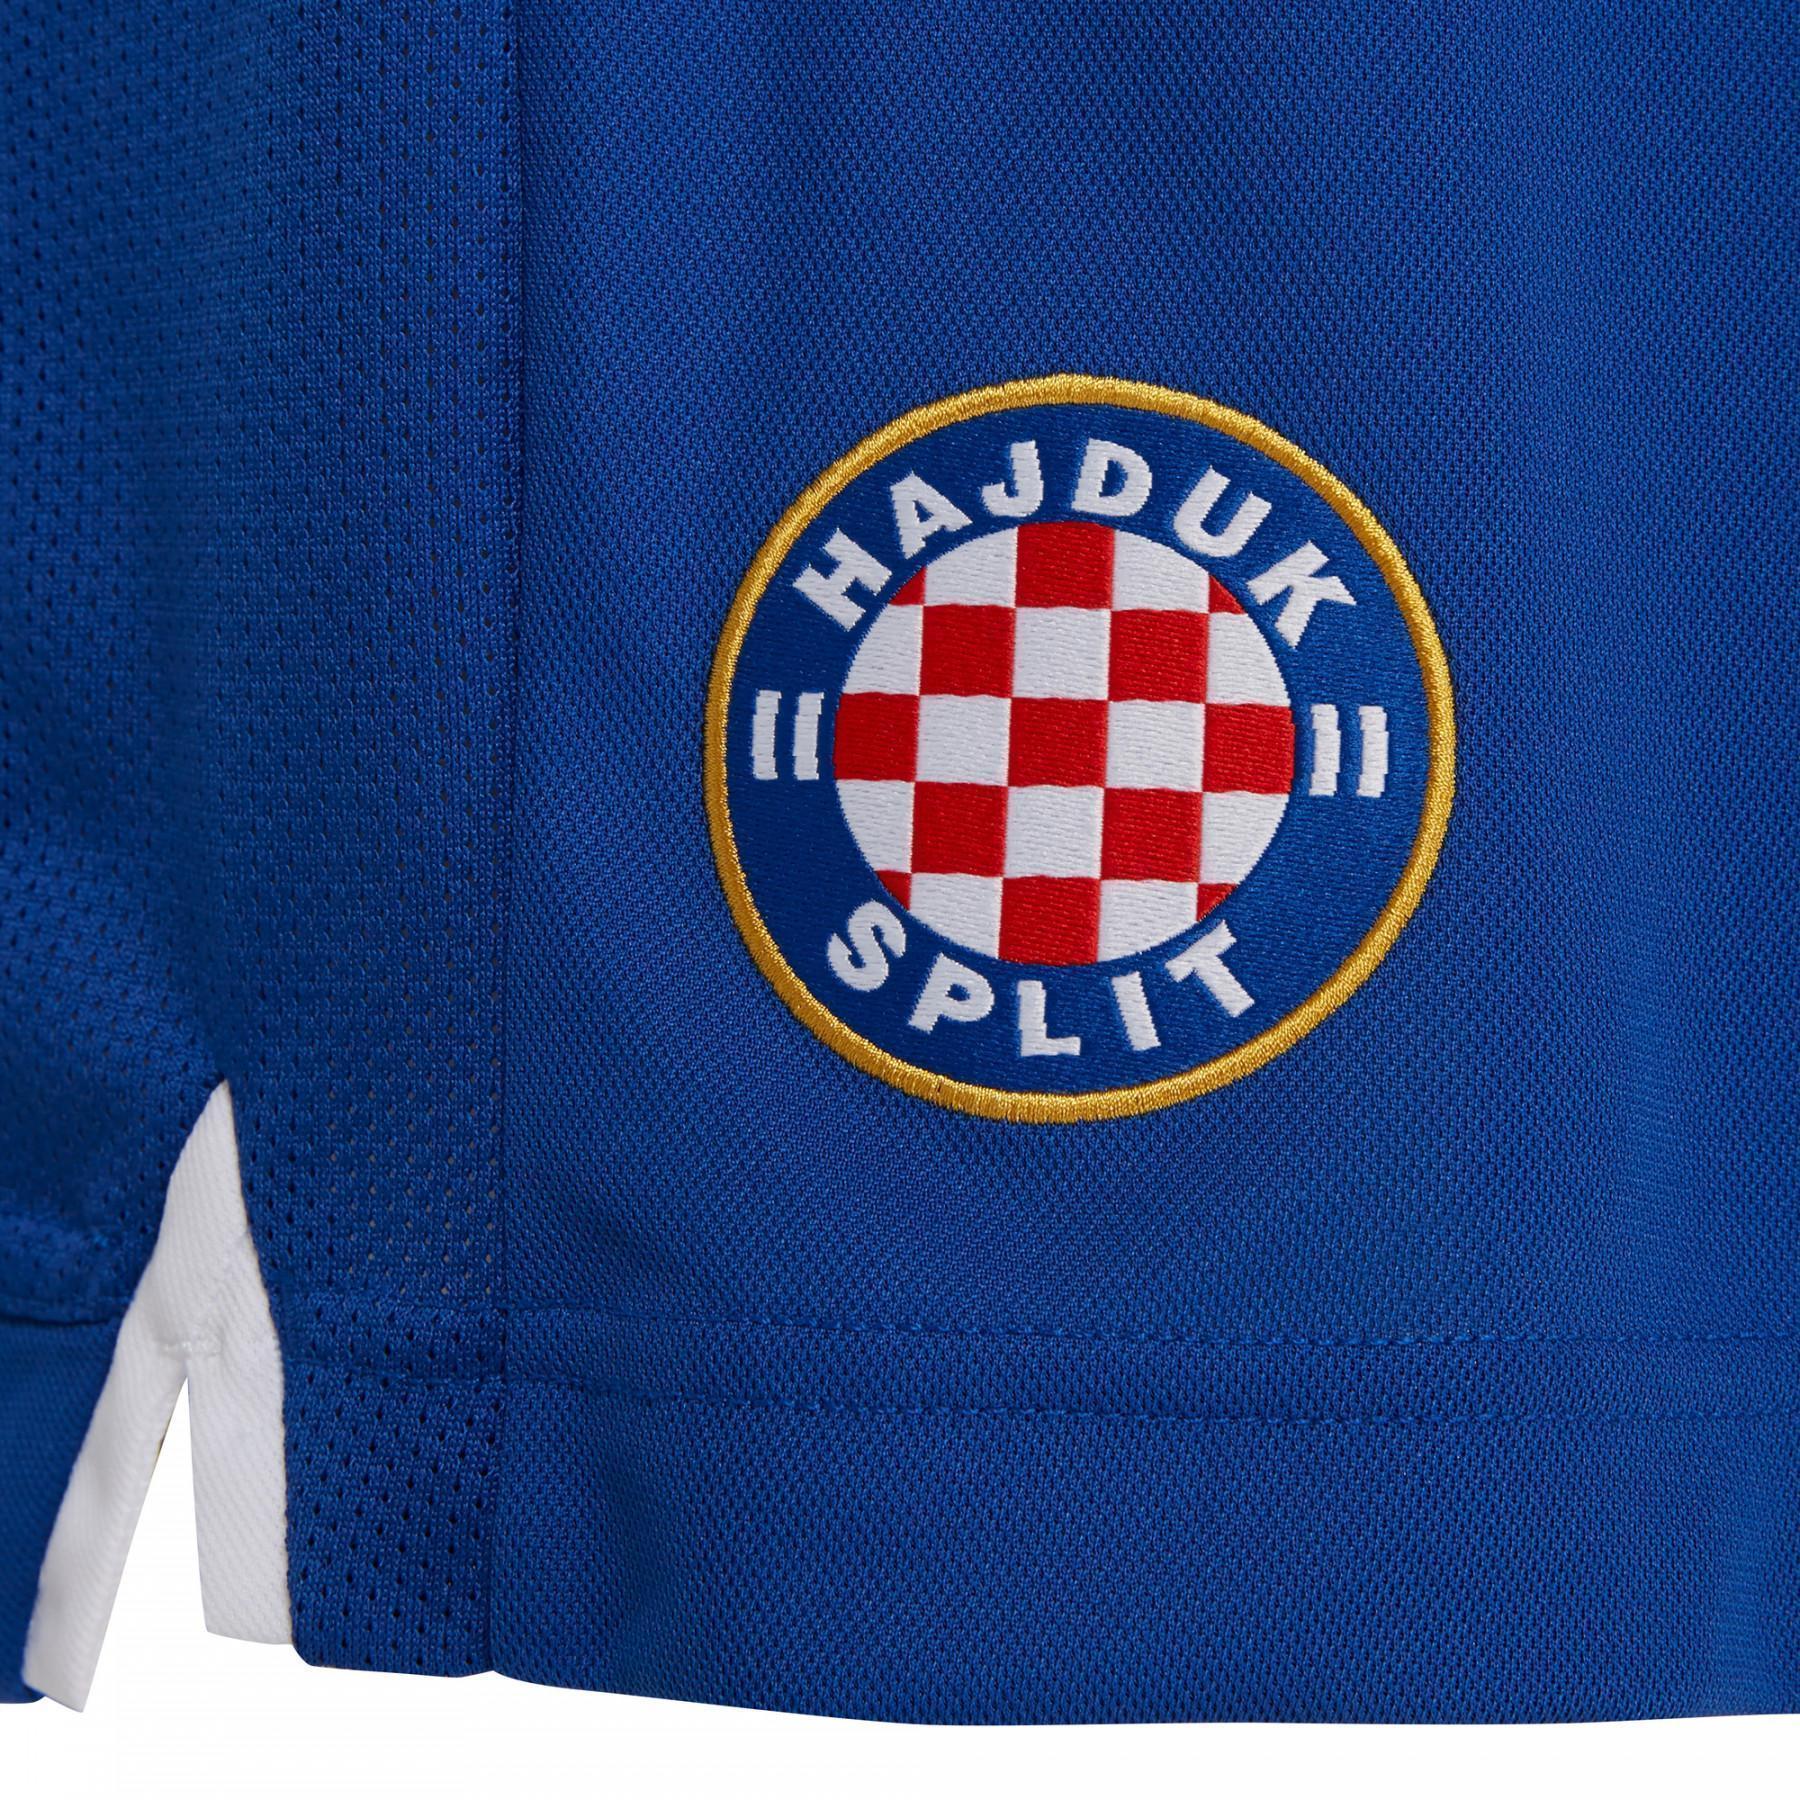 Home breve hnk Hajduk Split 19/20